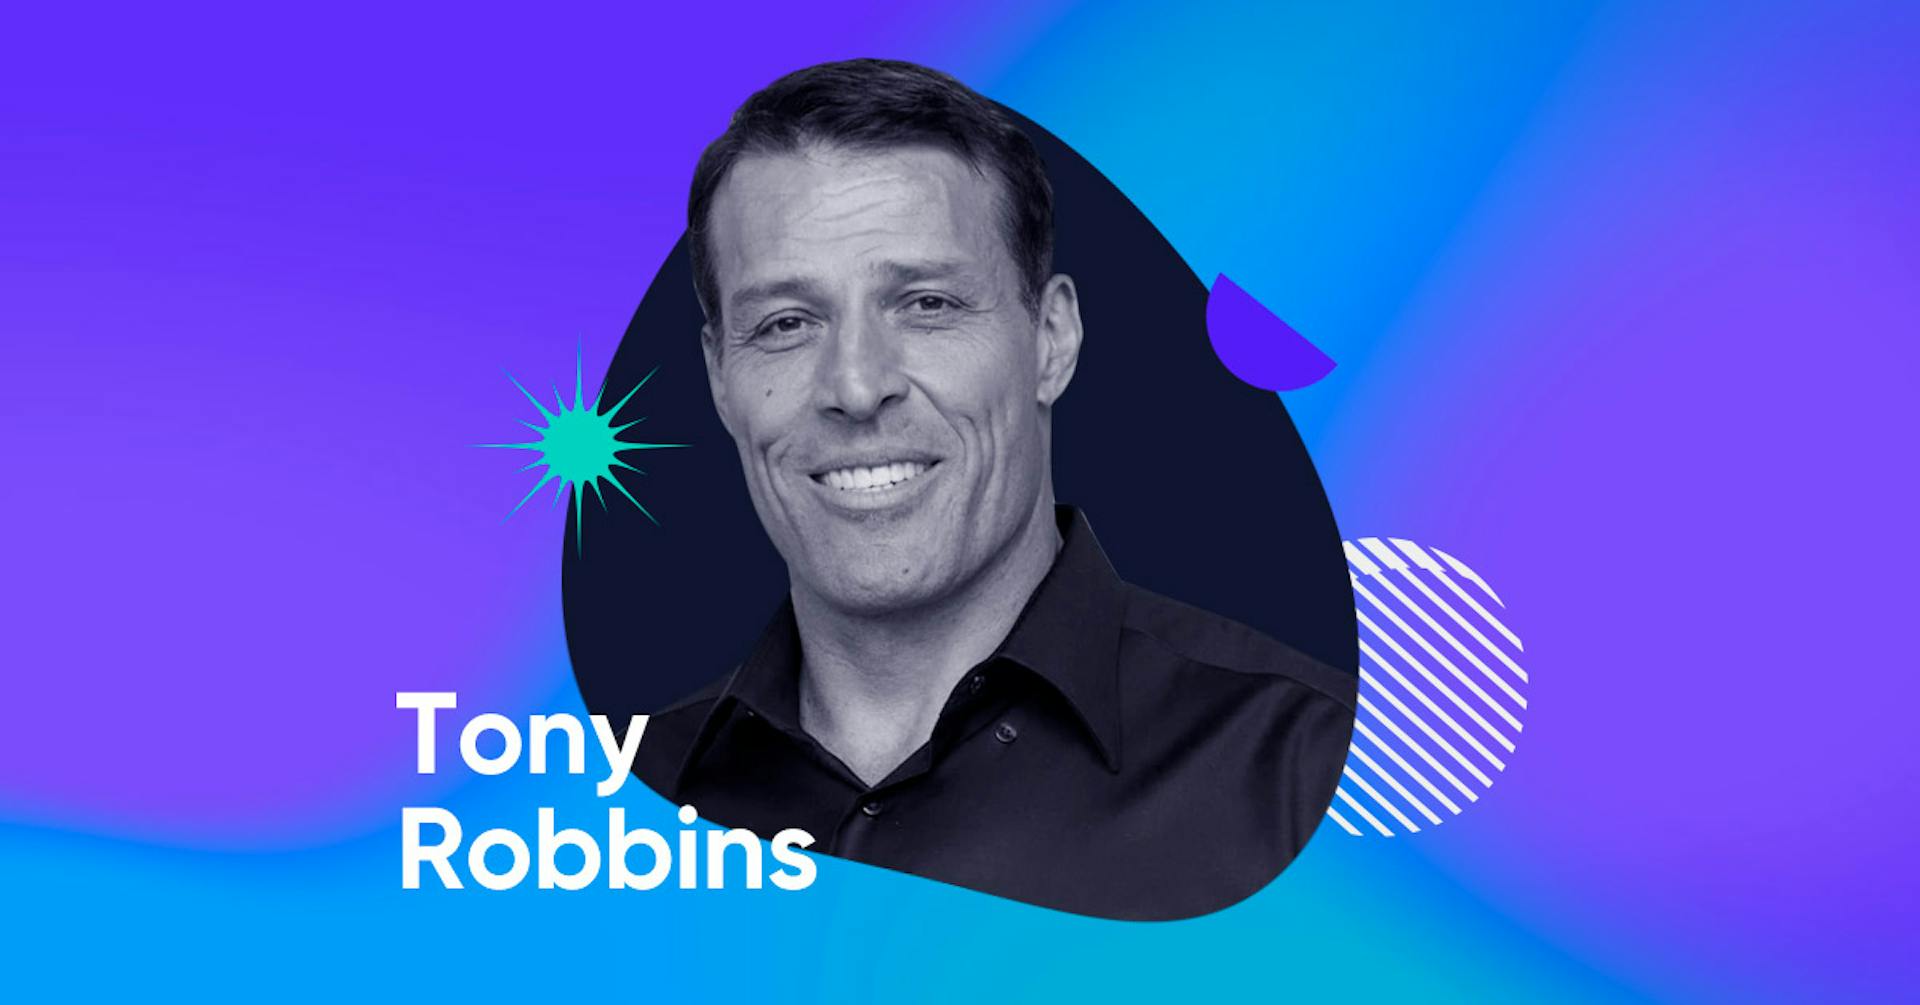 Descubre quién es Tony Robbins y cómo podría ayudarte a hacer de tu vida una obra maestra